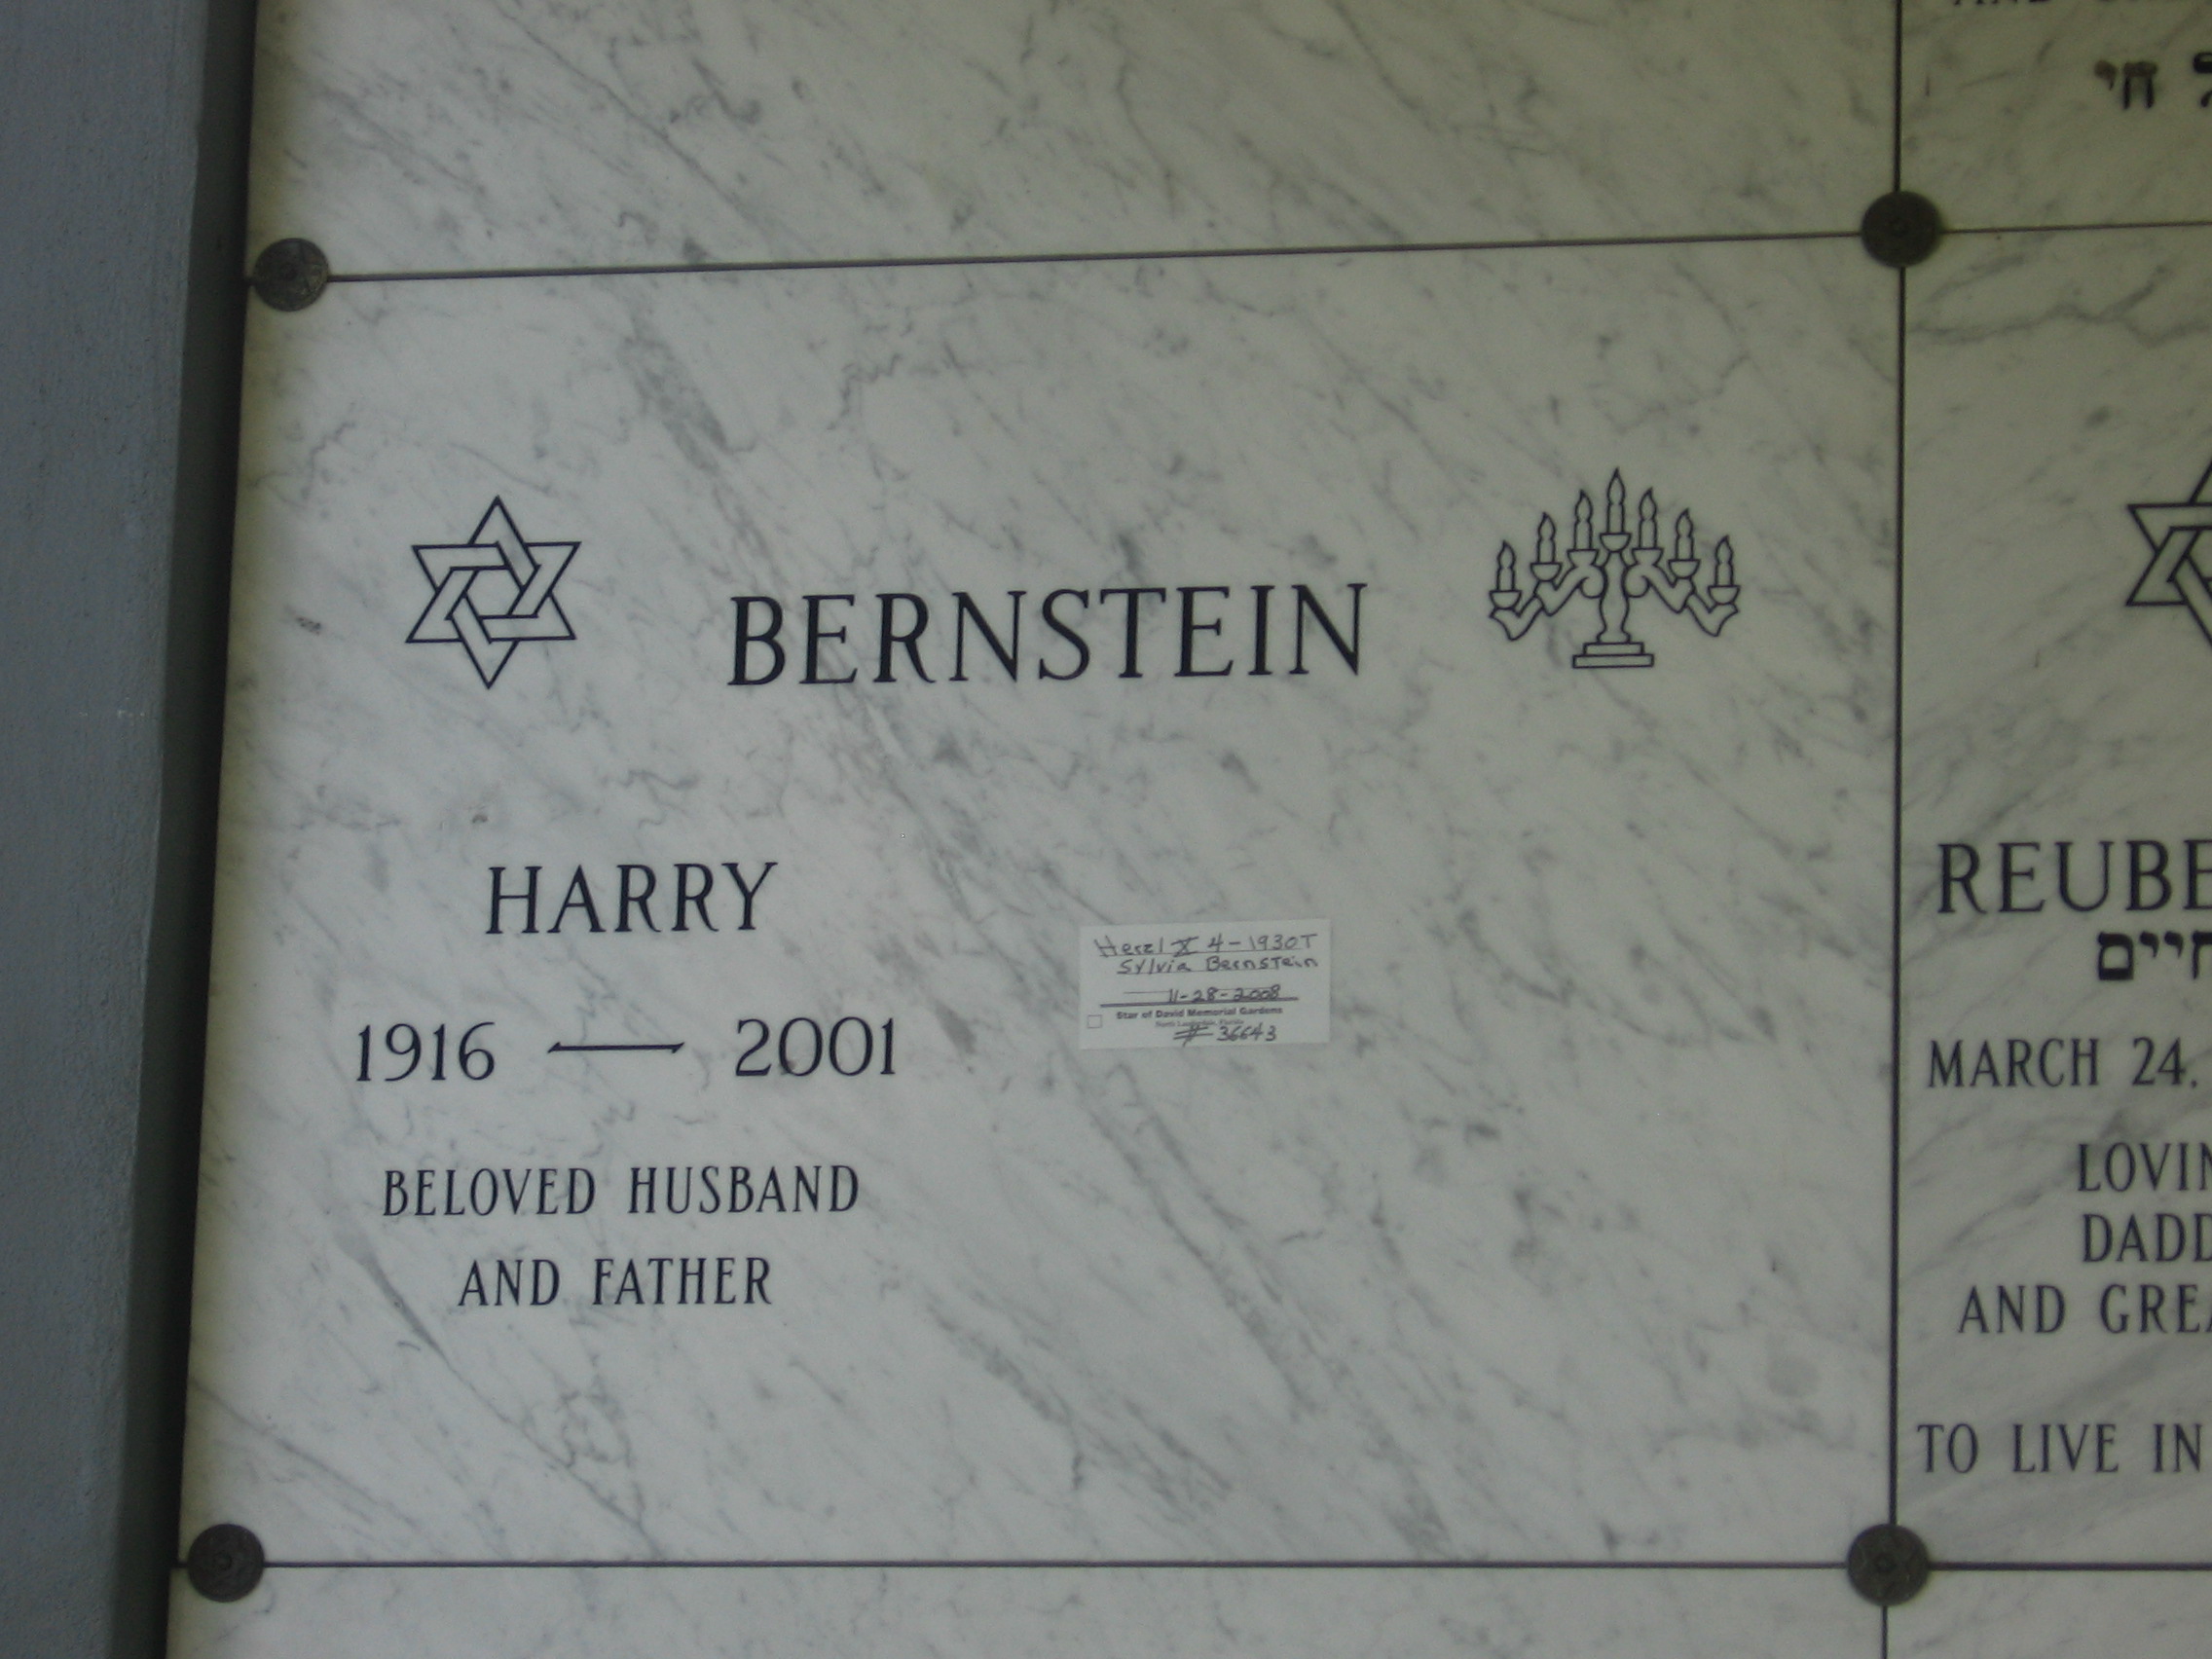 Harry Bernstein